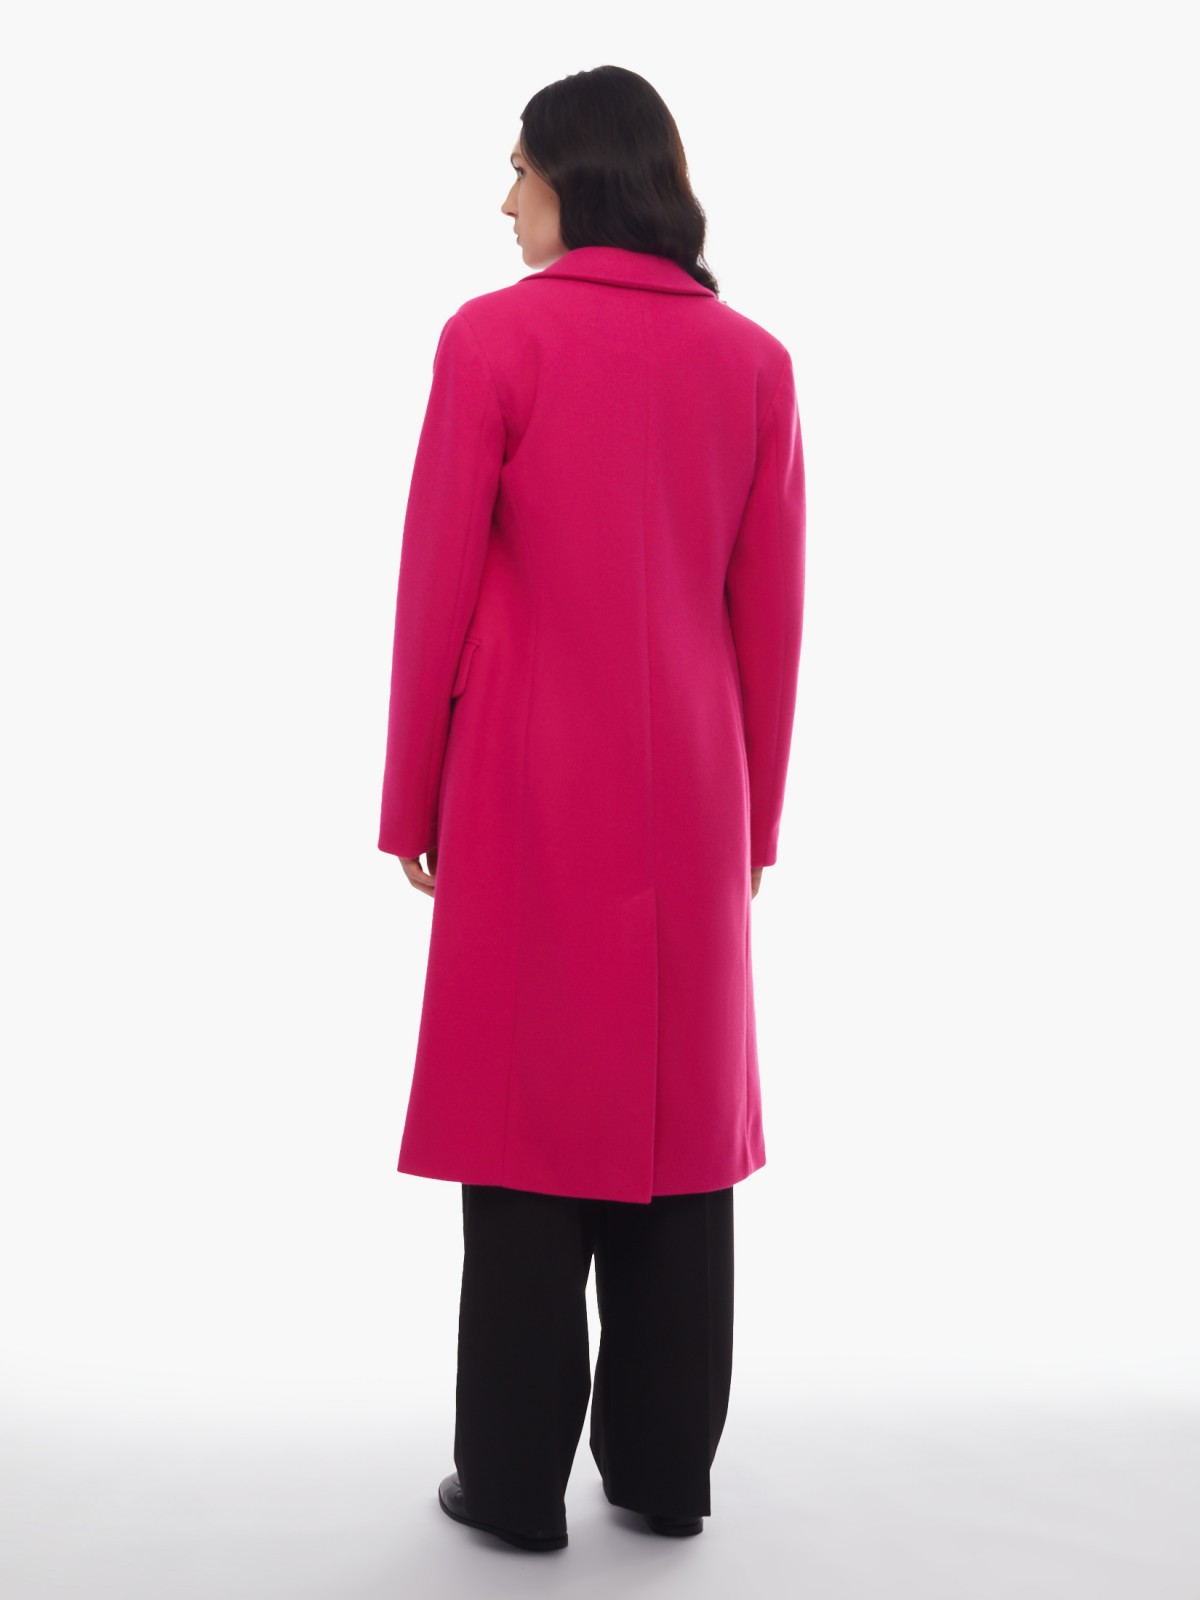 Тёплое пальто полуприлегающего фасона с отложным воротником zolla 024125857164, цвет фуксия, размер XS - фото 6